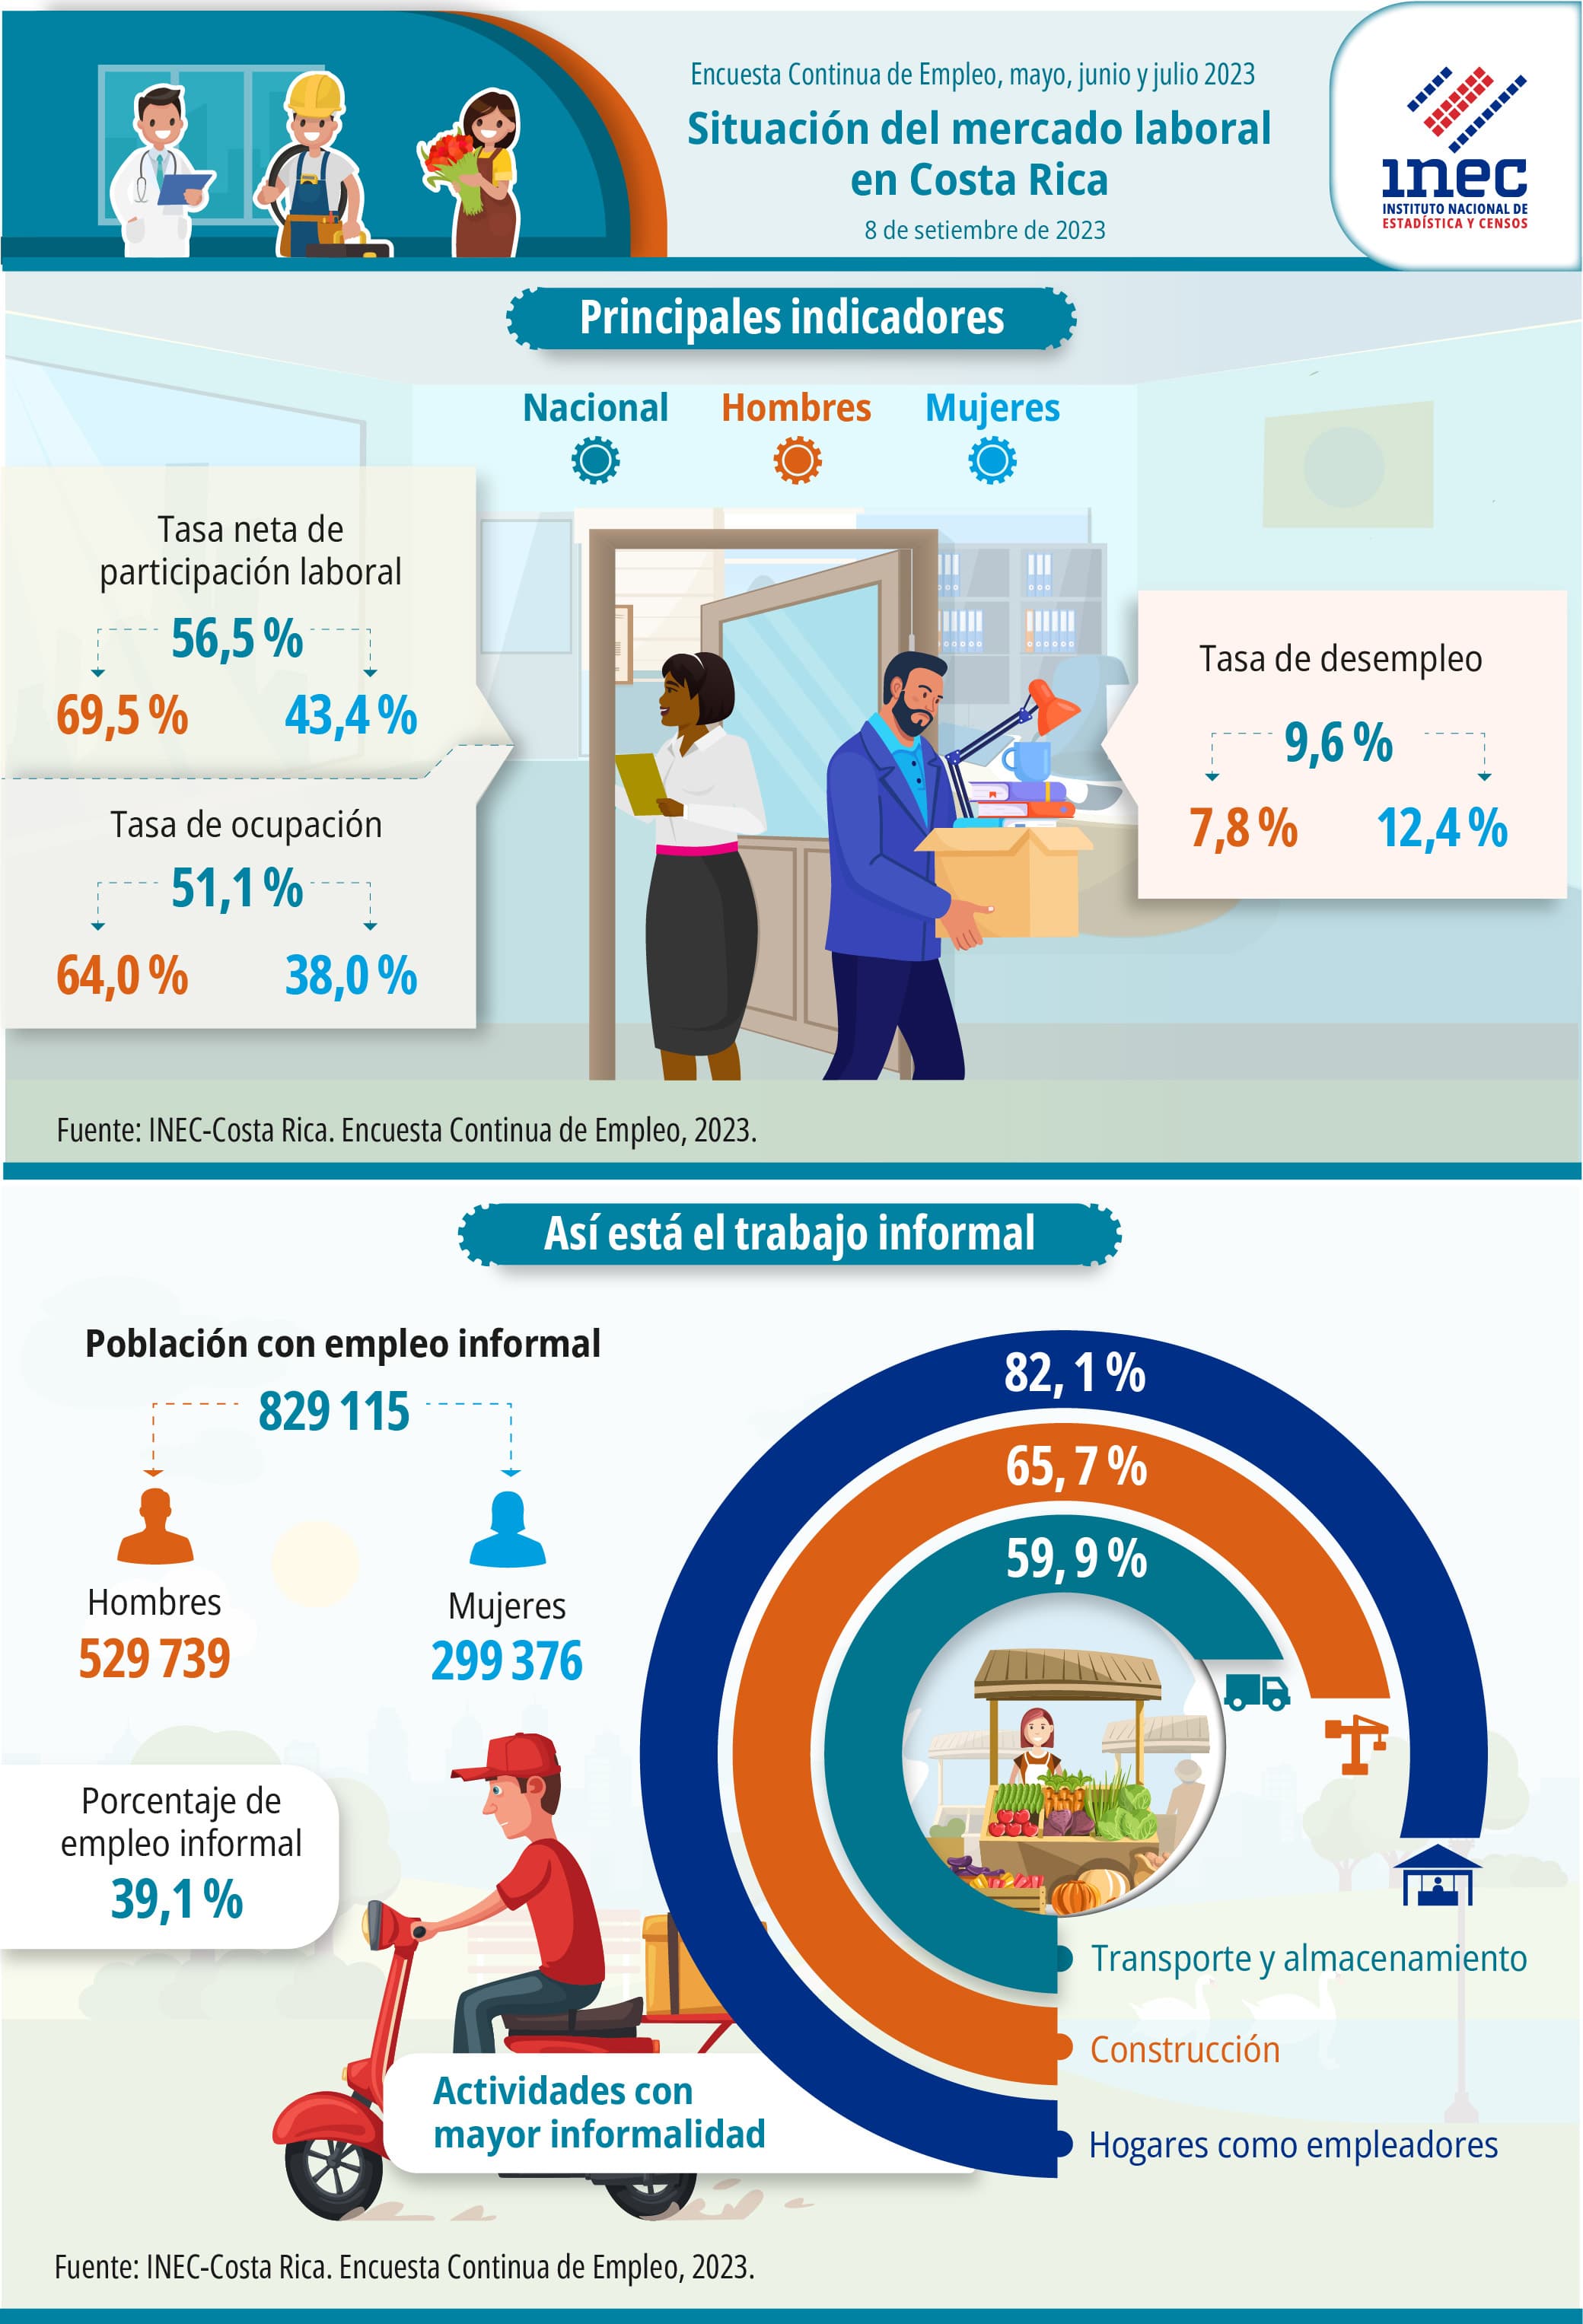 Infografía. Situación del mercado laboral en Costa Rica. Encuesta Continua de Empleo. Trimestre móvil: mayo, junio, julio 2023.